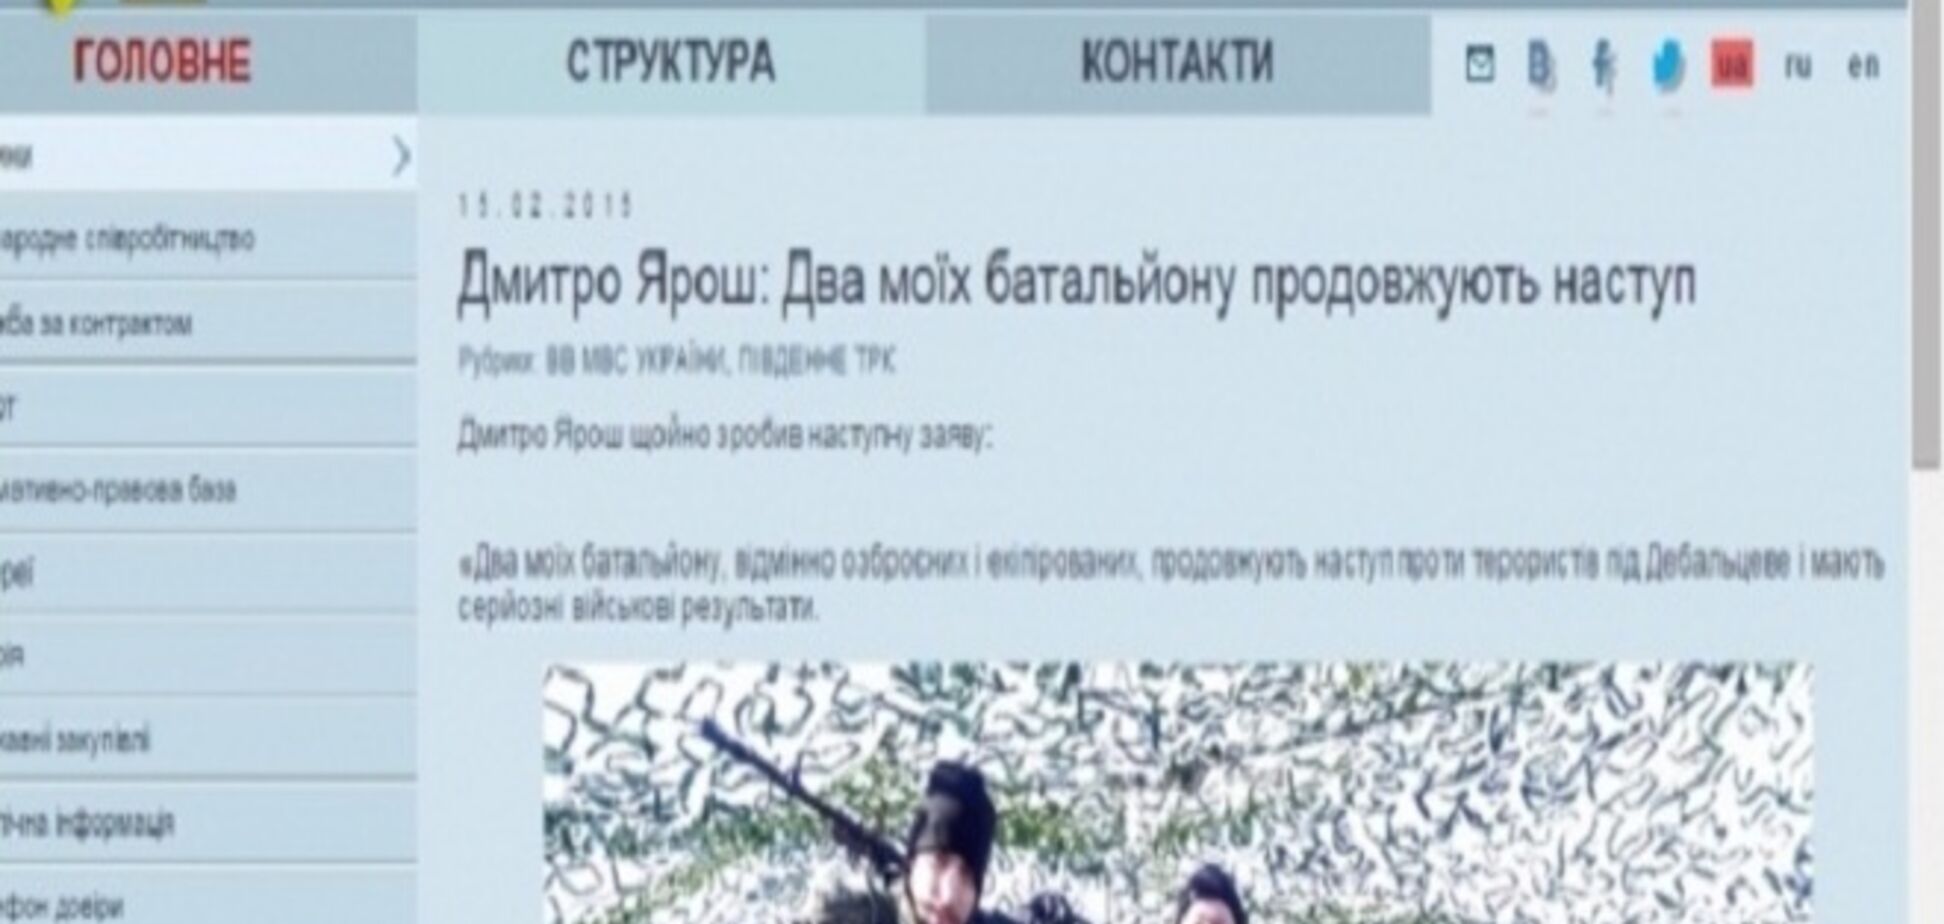 Рады стараться. Российские СМИ растиражировали фейк об 'атаке Яроша': доказательства